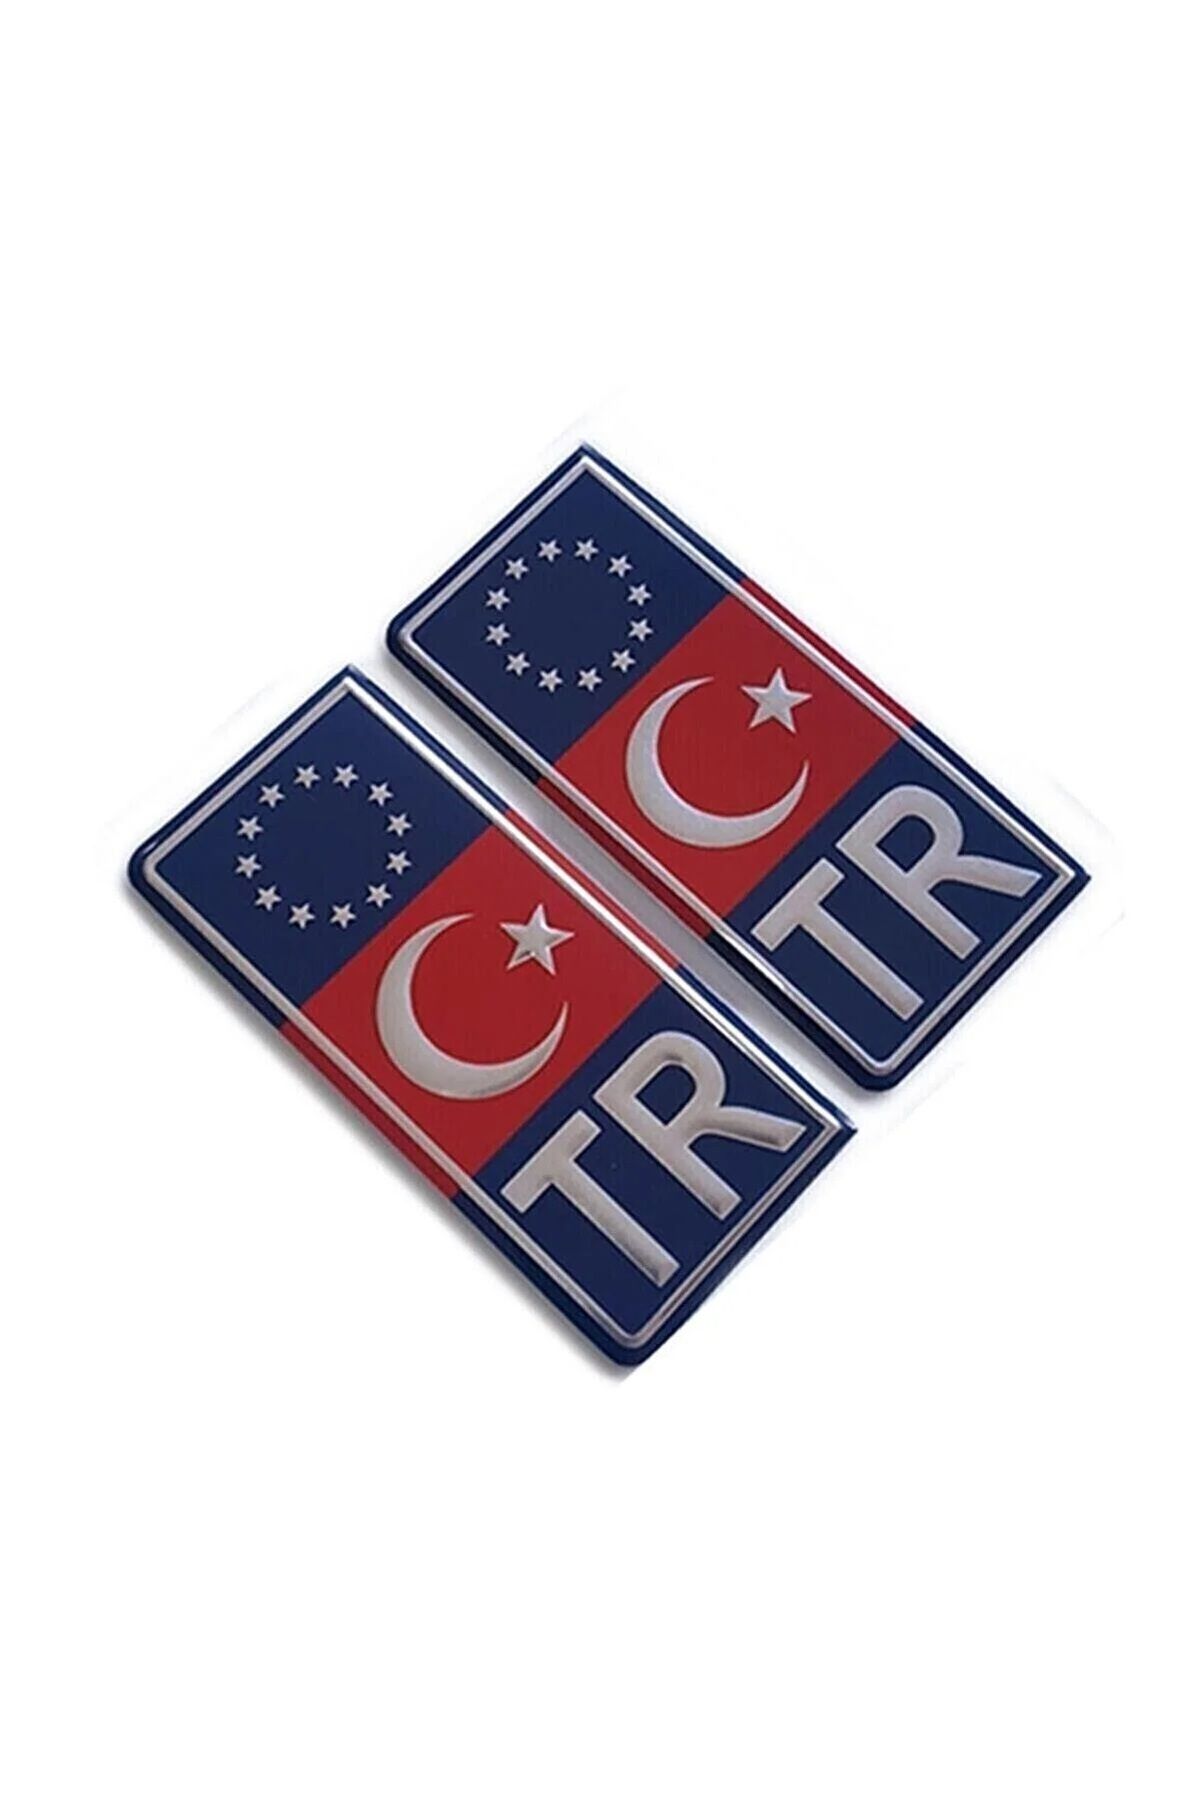 GARDENAUTO Tr Plaka Krom Sticker 2'li - Türkiye Plaka Krom Sticker - Türkiye Plakalık Krom